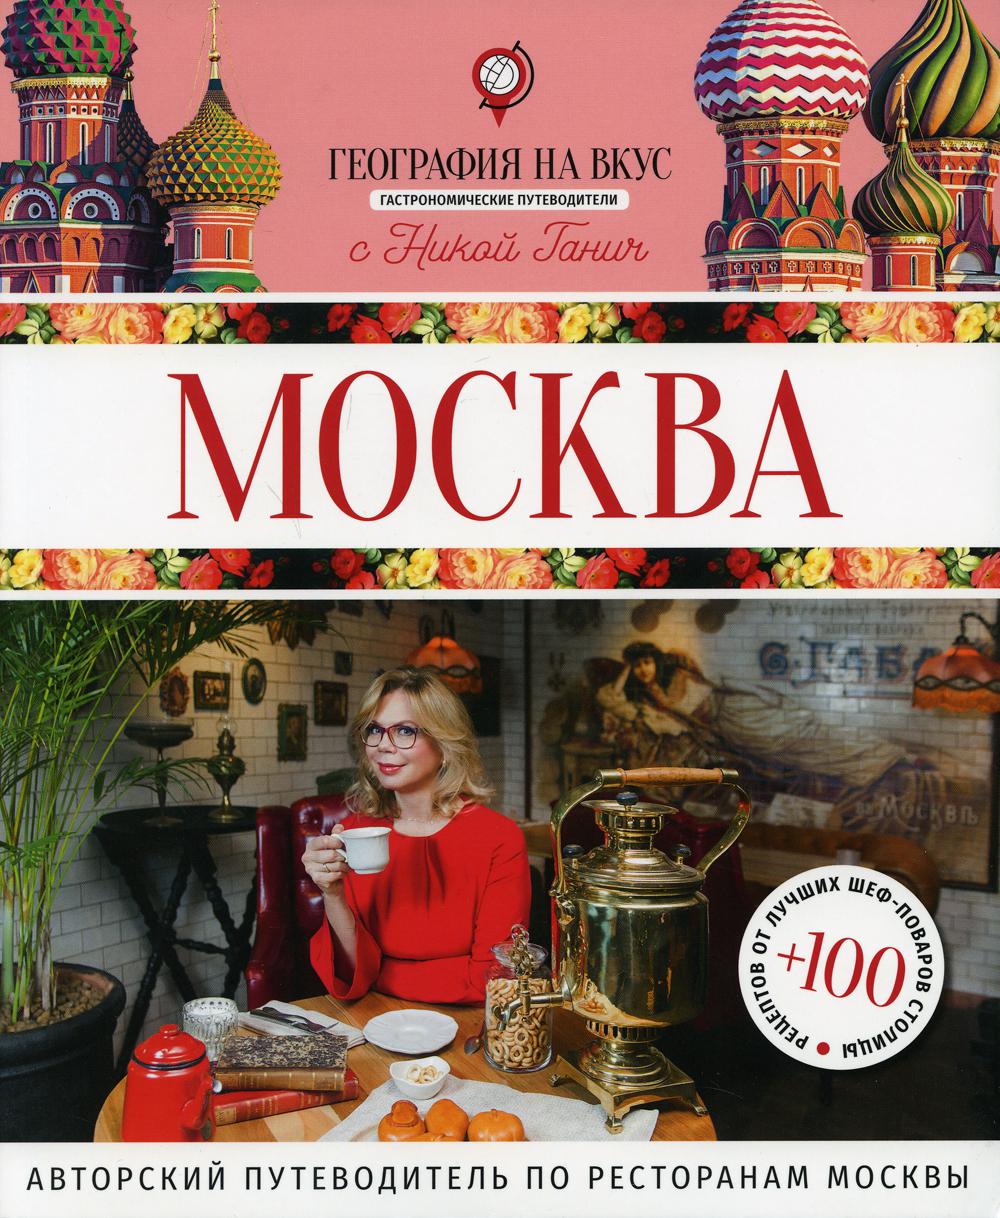 Москва: гастрономический путеводитель. (География на вкус с Никой Ганич)